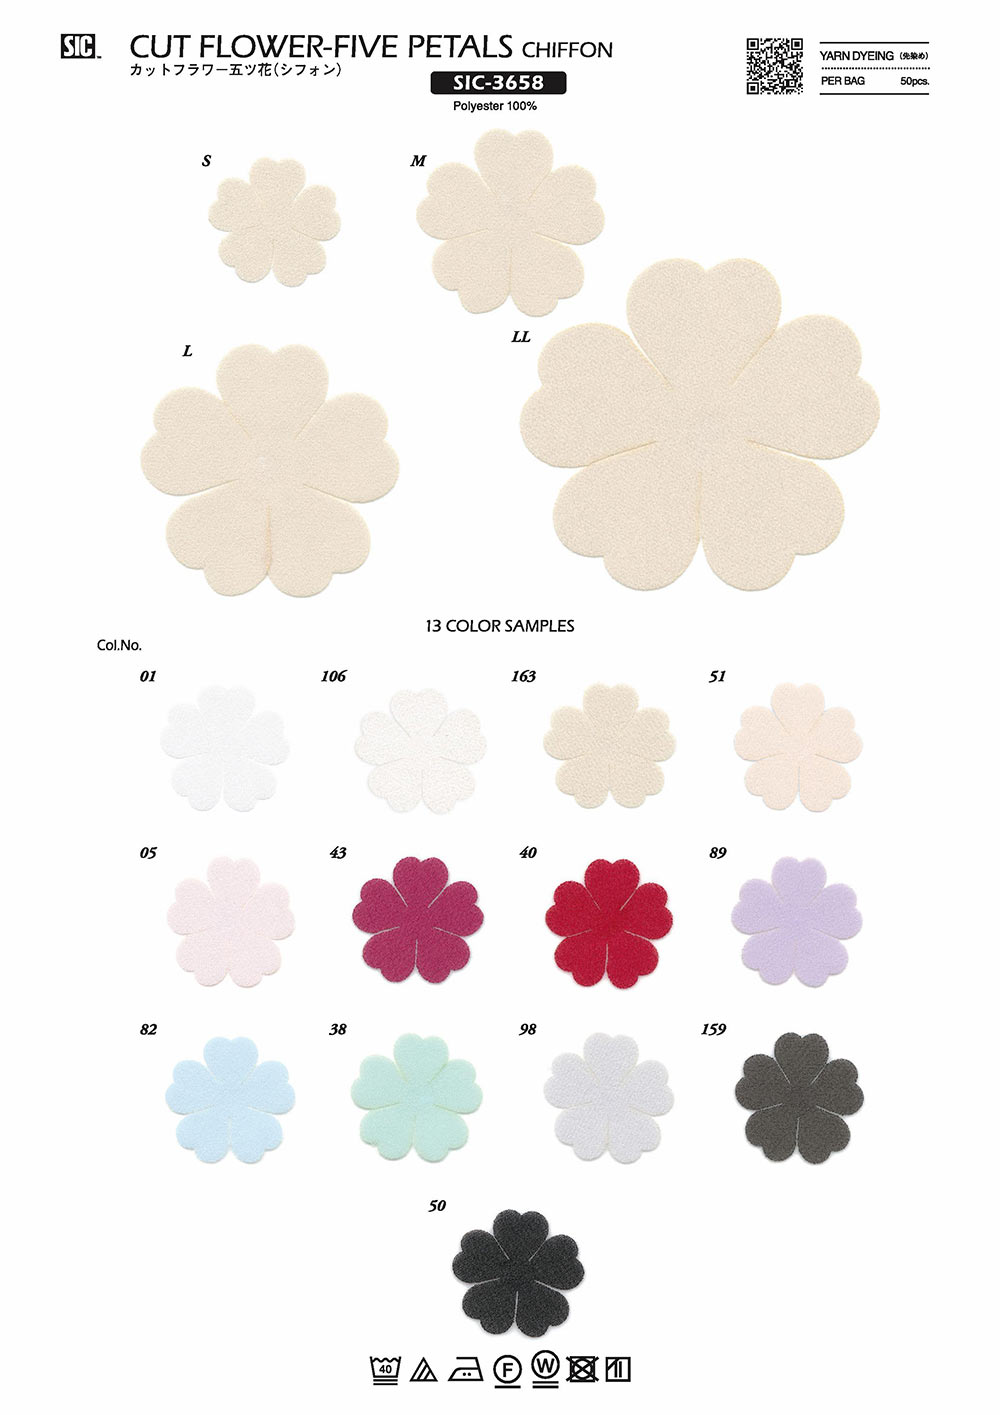 SIC-3658 Schnittblume Fünf Blumen (Chiffon)[Verschiedene Waren Und Andere] SHINDO(SIC)